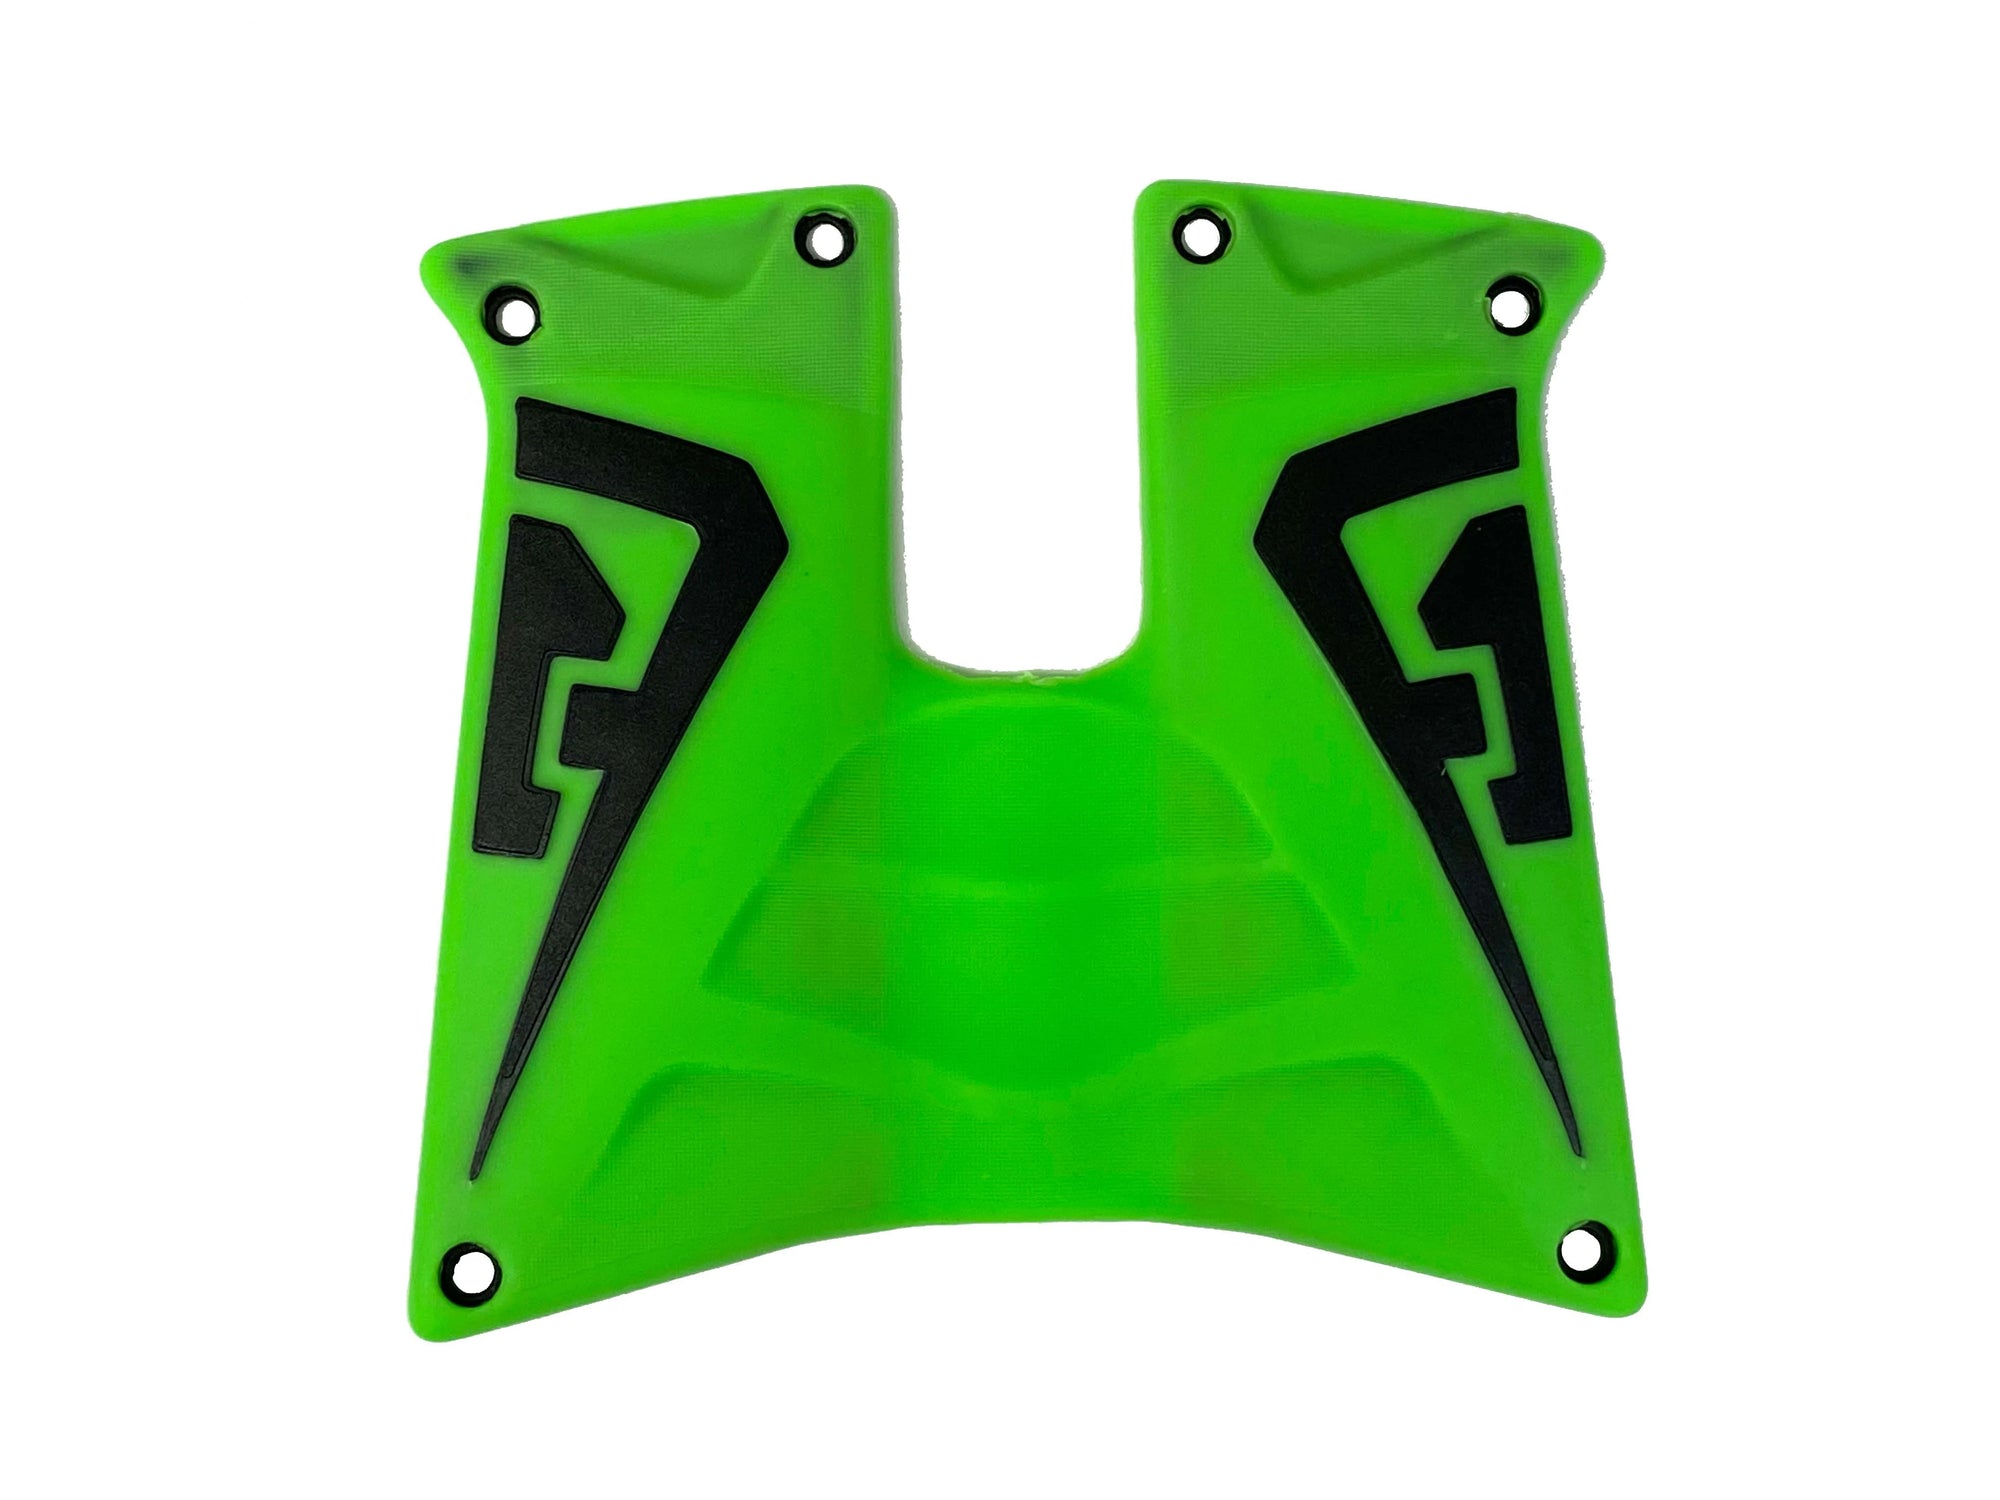 Field One Rubber Grip Panels - Neon Green/Black